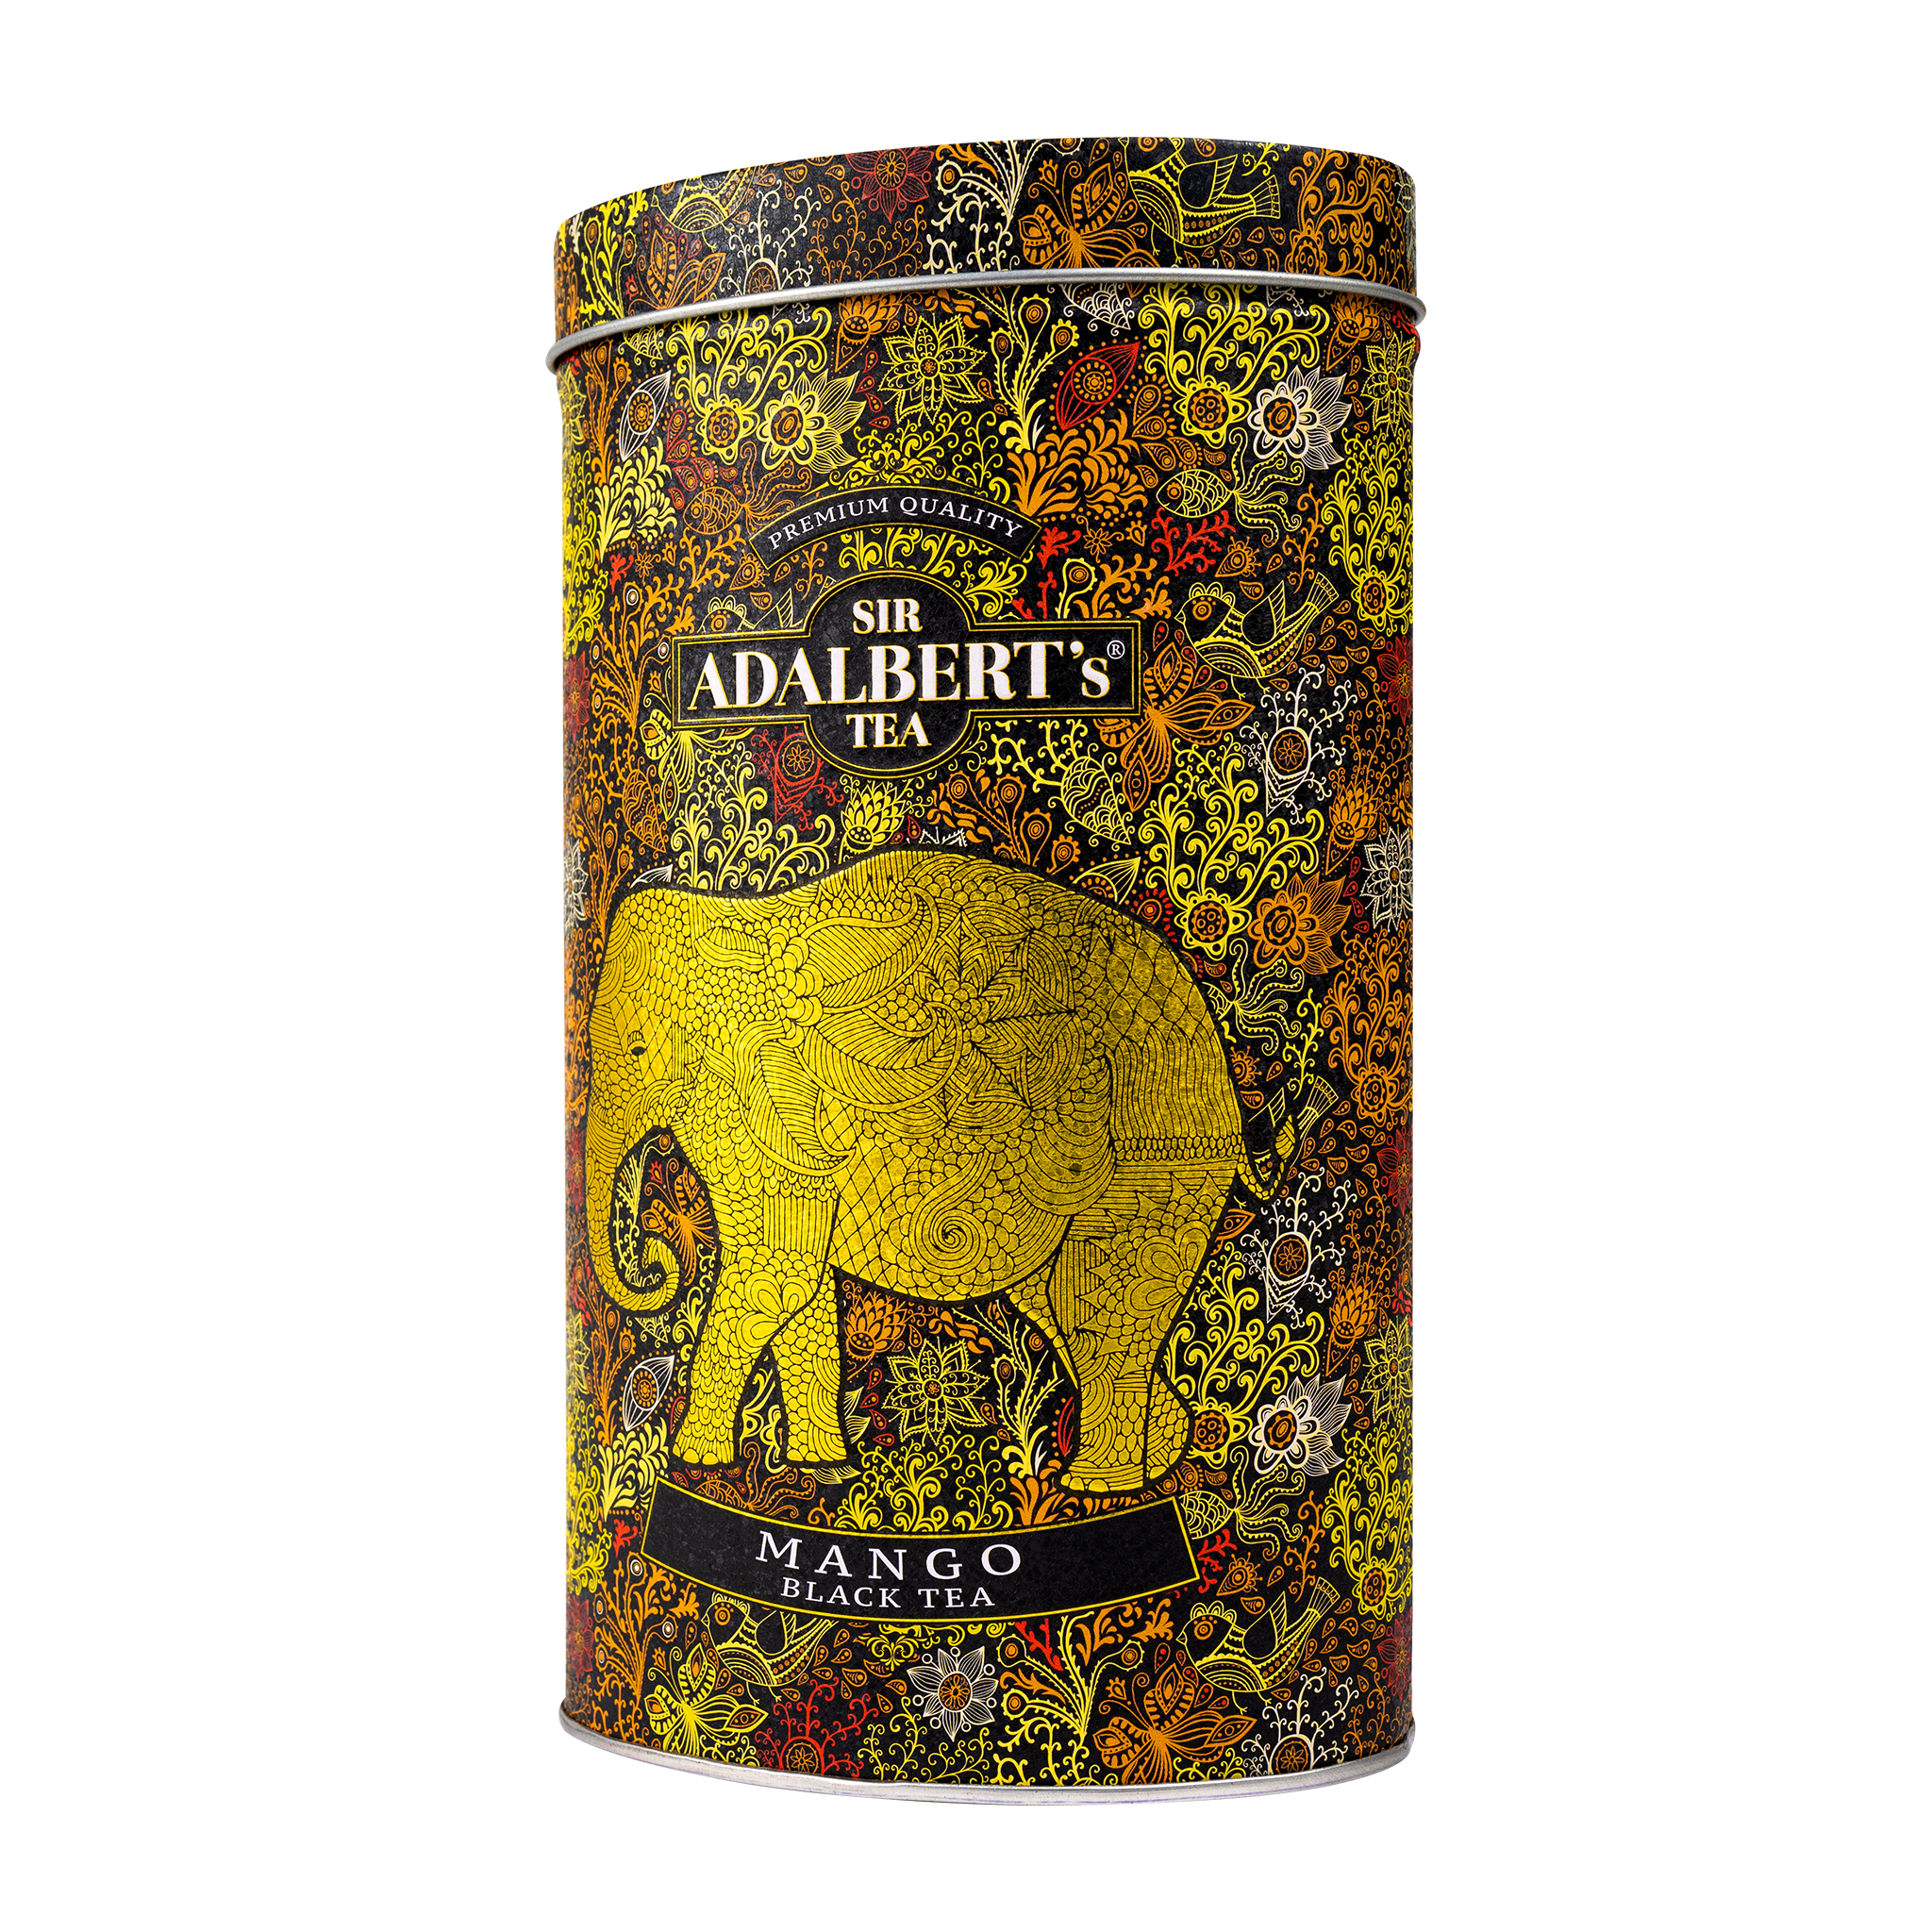 Adalbert's Tea Mango - leaf 110g in a can